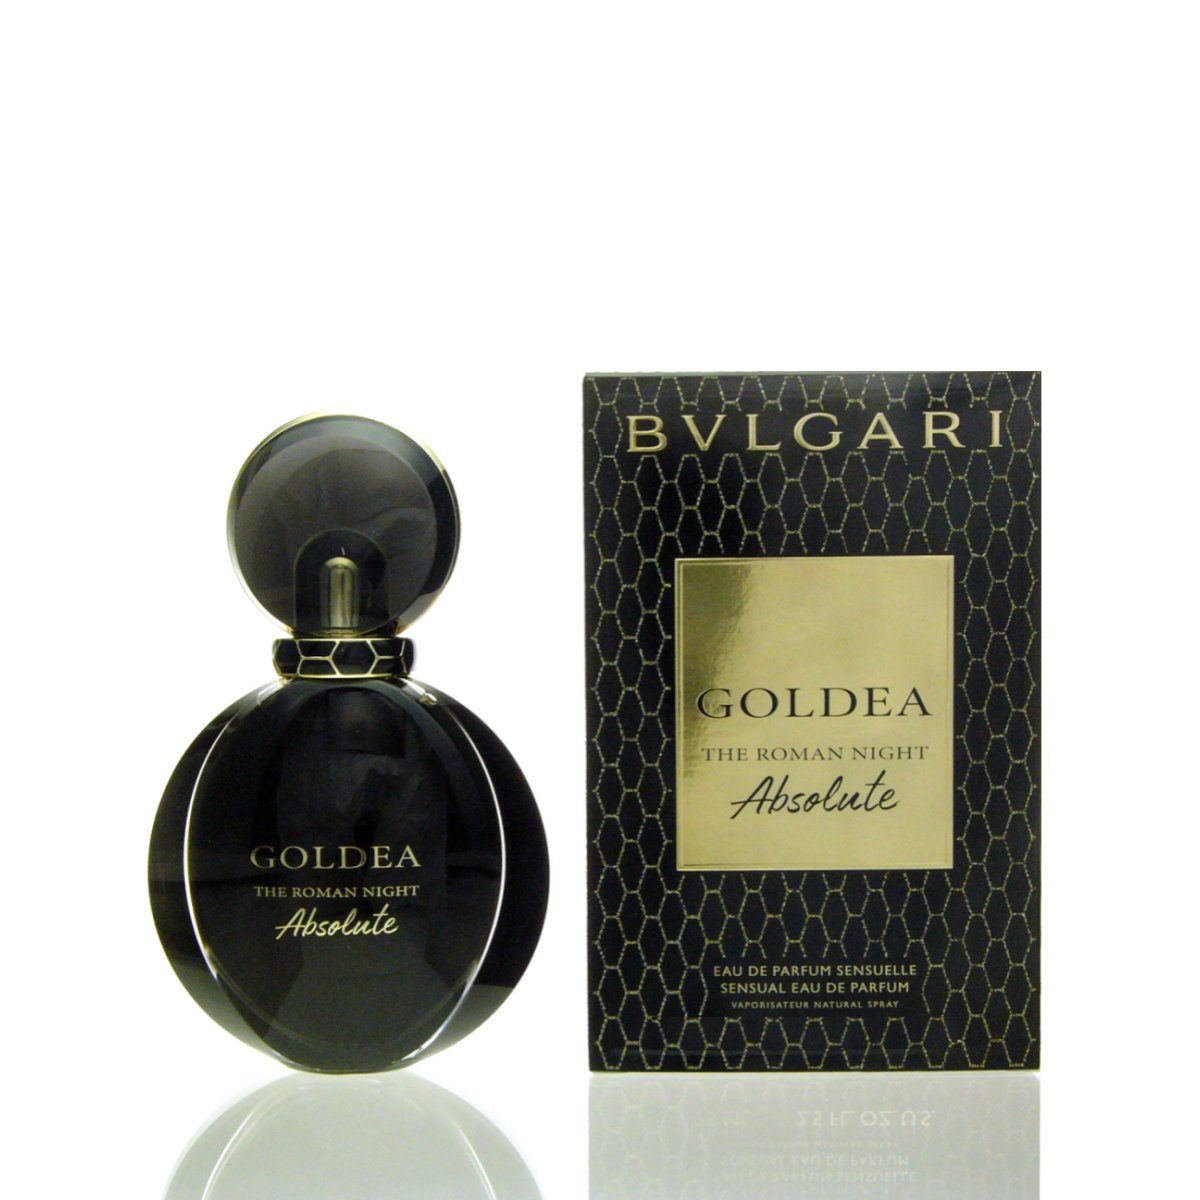 BVLGARI Eau de Parfum Bvlgari Goldea The Roman Night Absolute Eau de Parfum 50 ml | Eau de Parfum